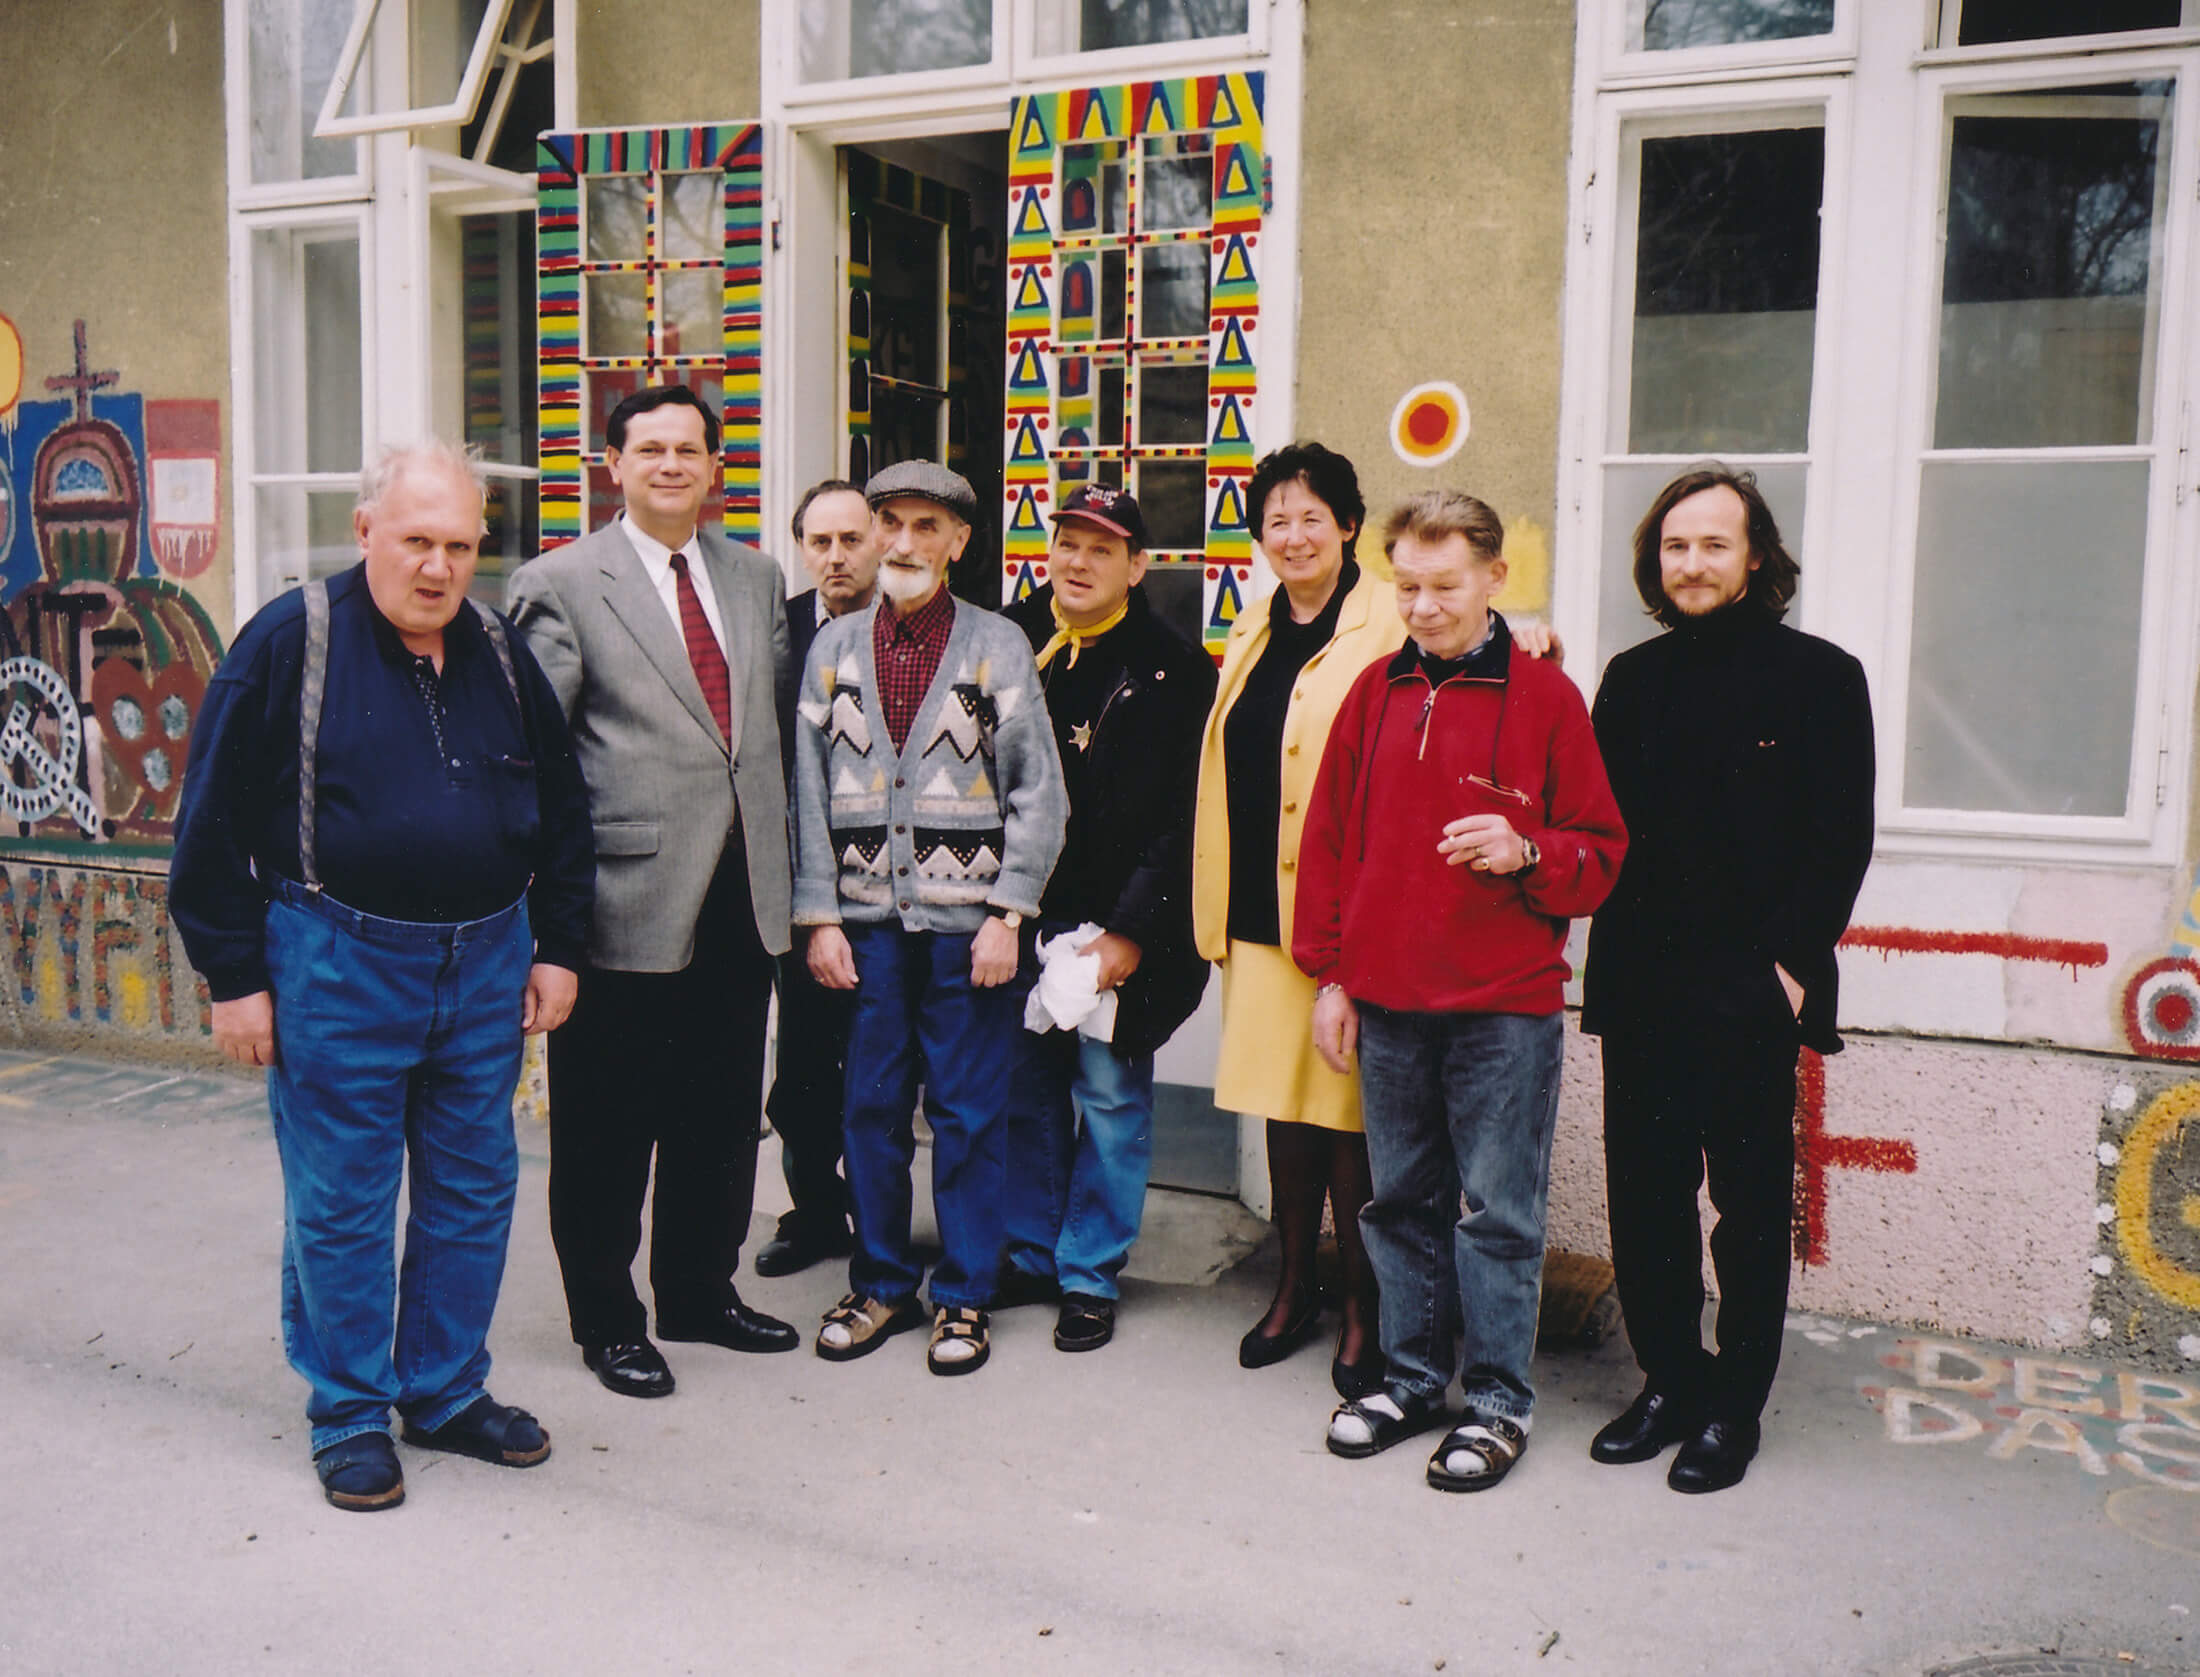 Gruppenbild der Künstler von Gugging mit Kultur-Landesrätin Liese Prokop und Johann Feilacher (ganz rechts), Psychiater und seit 2006 künstlerischer Direktor des Museums in Gugging.